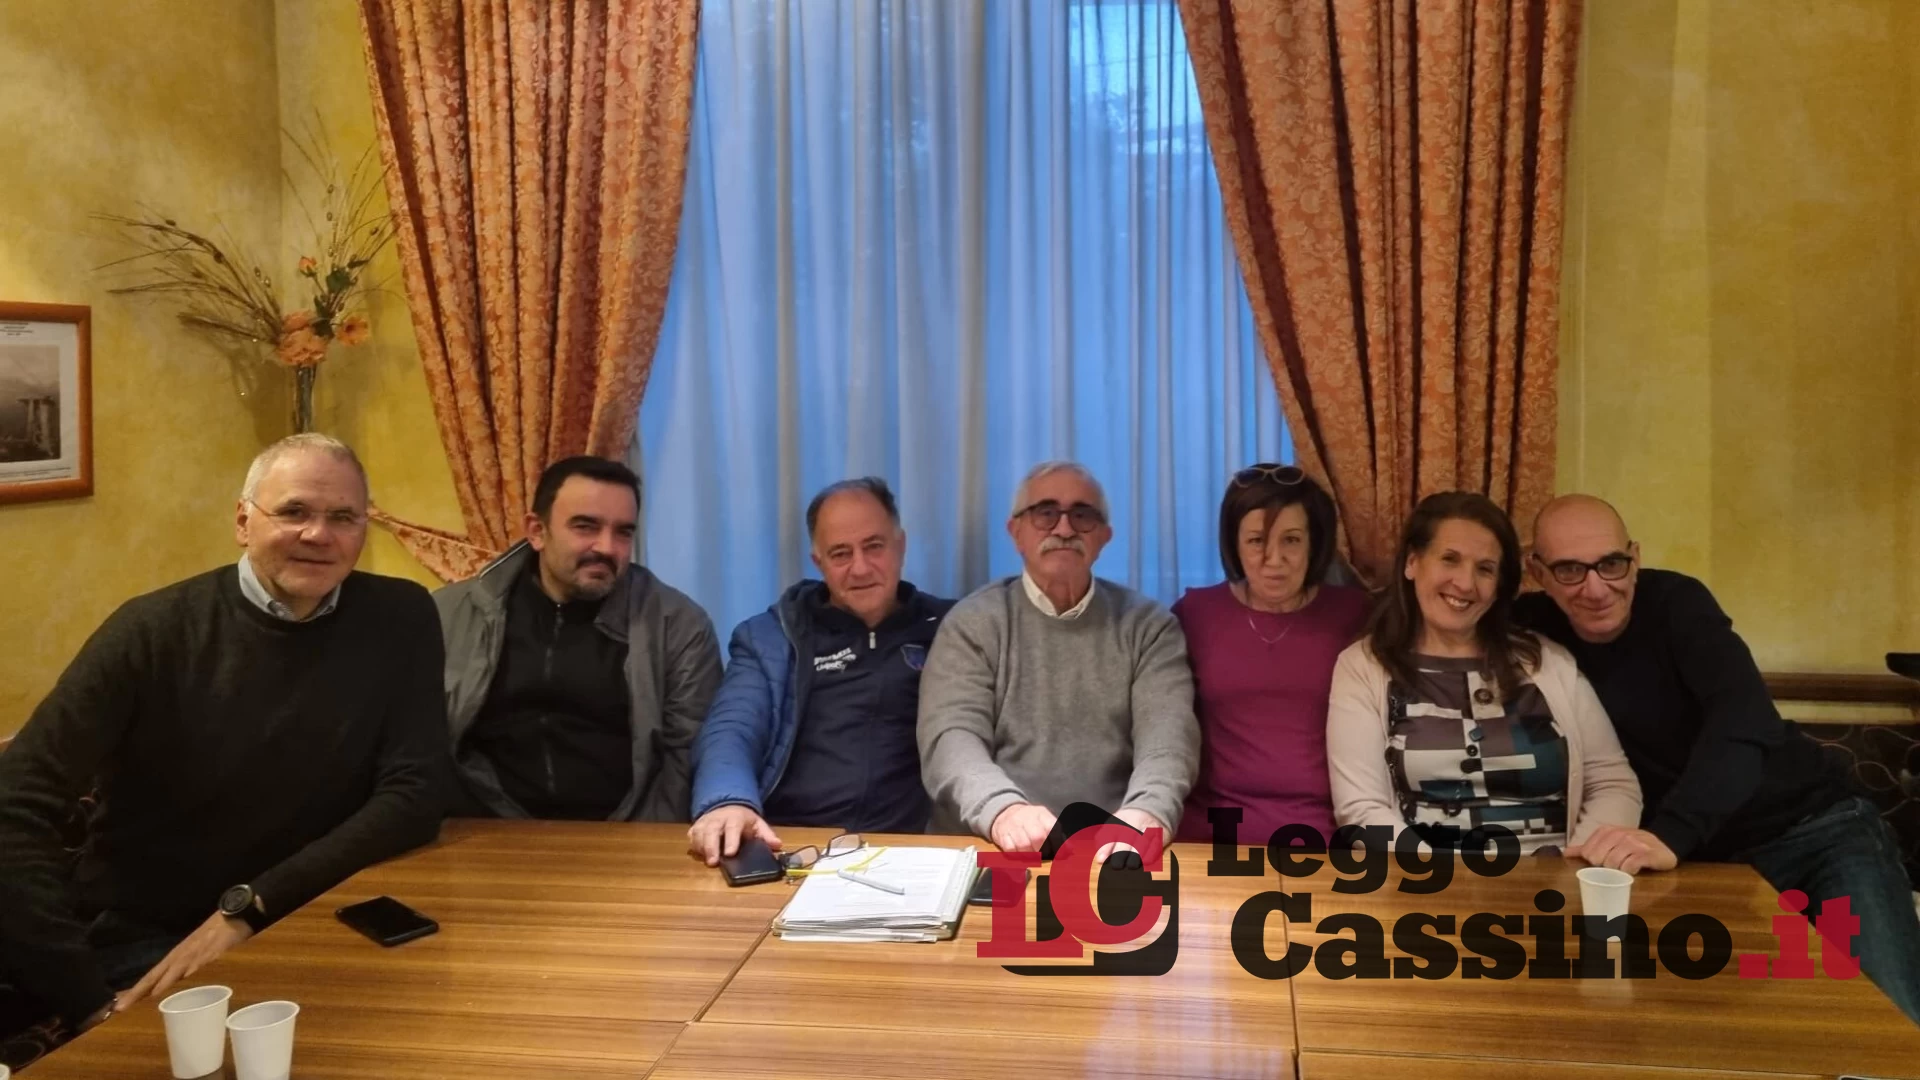 Nuovi soci, antiche tradizioni: l'associazione 'Vecchia Cassino' riparte